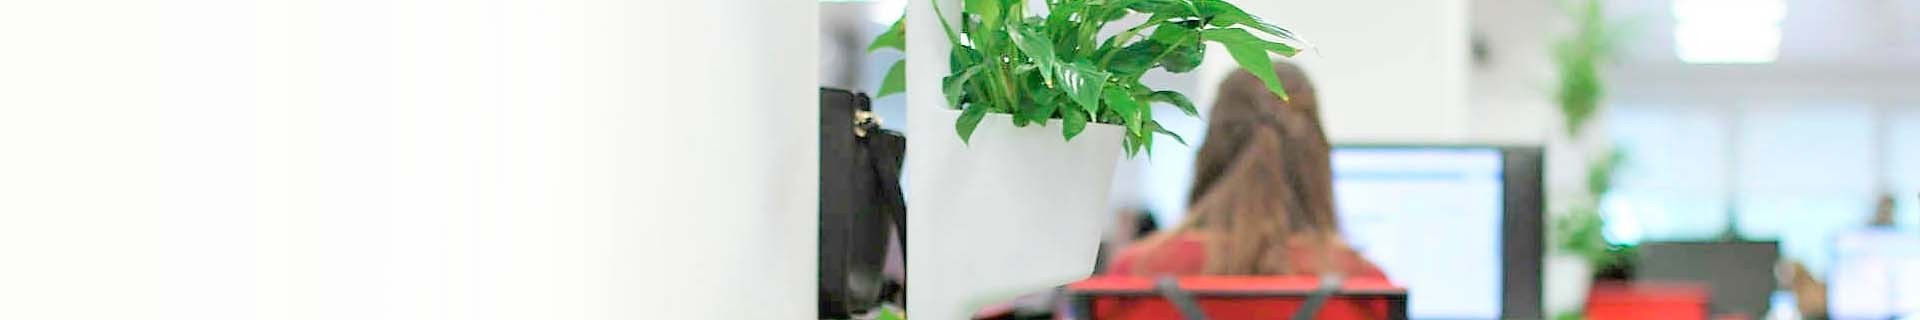 Büropflanzen online |Lieferung von Zimmerpflanzen l CitySens